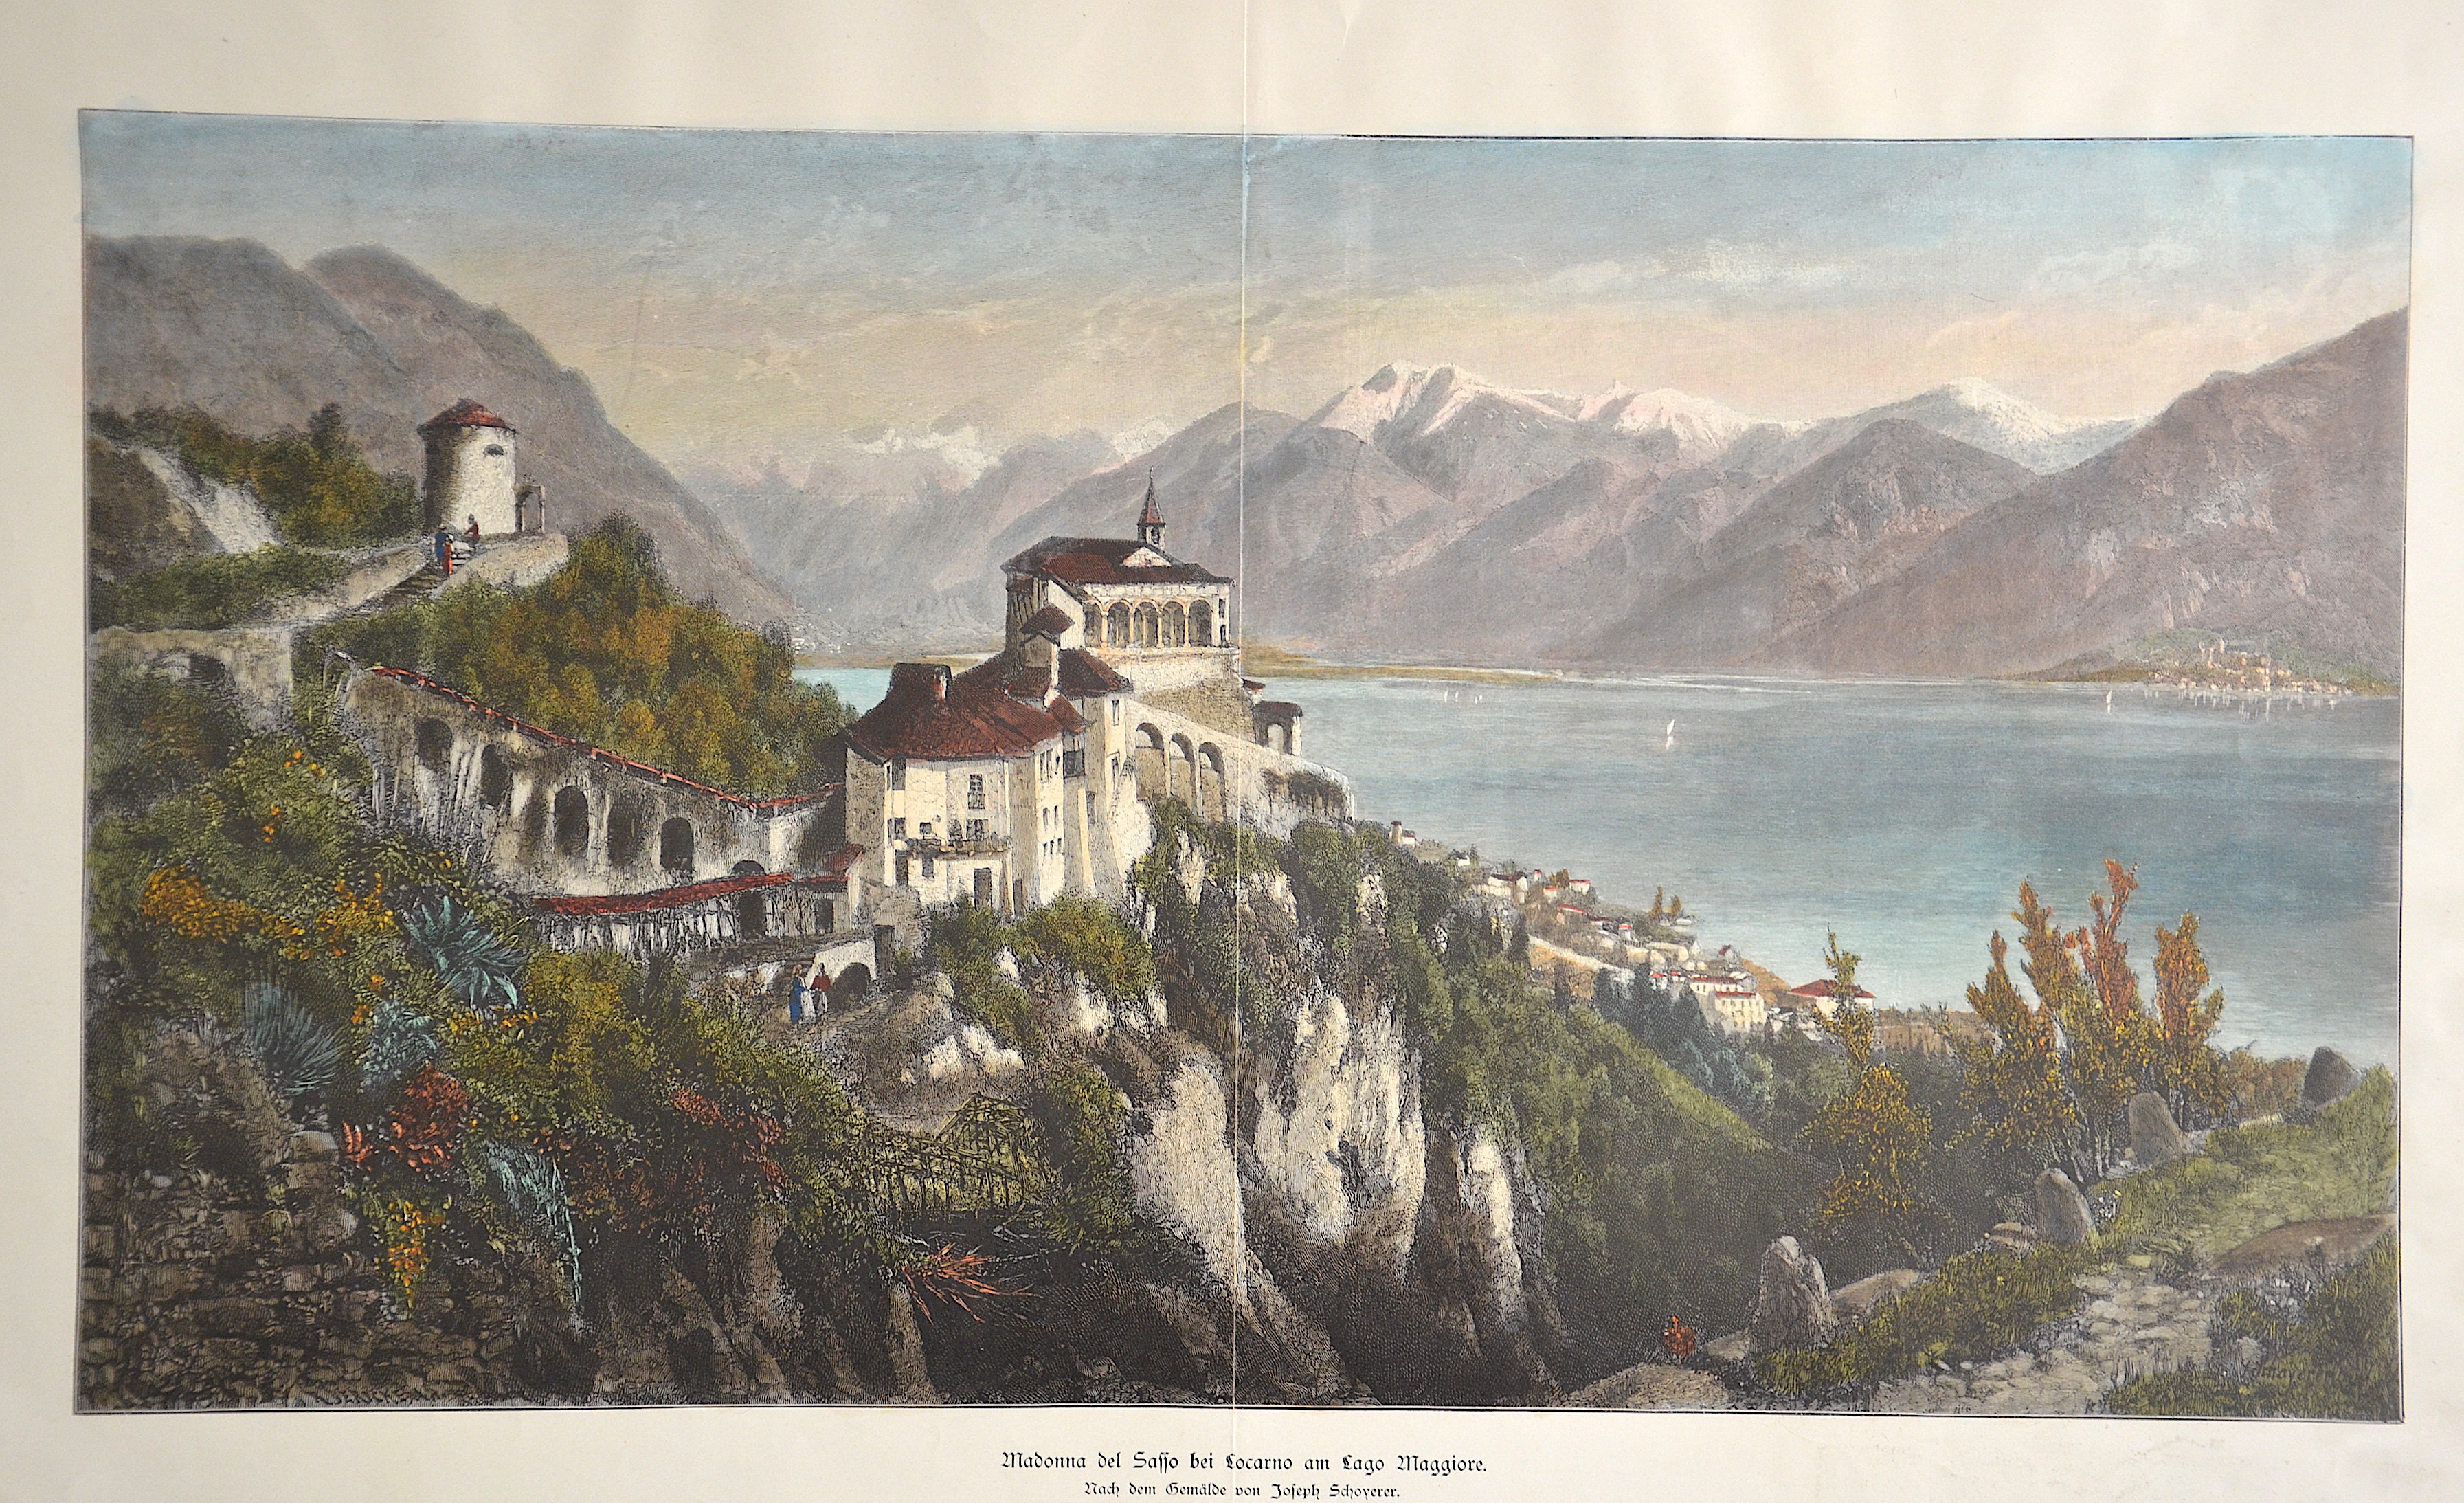 Schoyerer Joseph Madonna del Sasso bei Locarno am Lago Maggiore